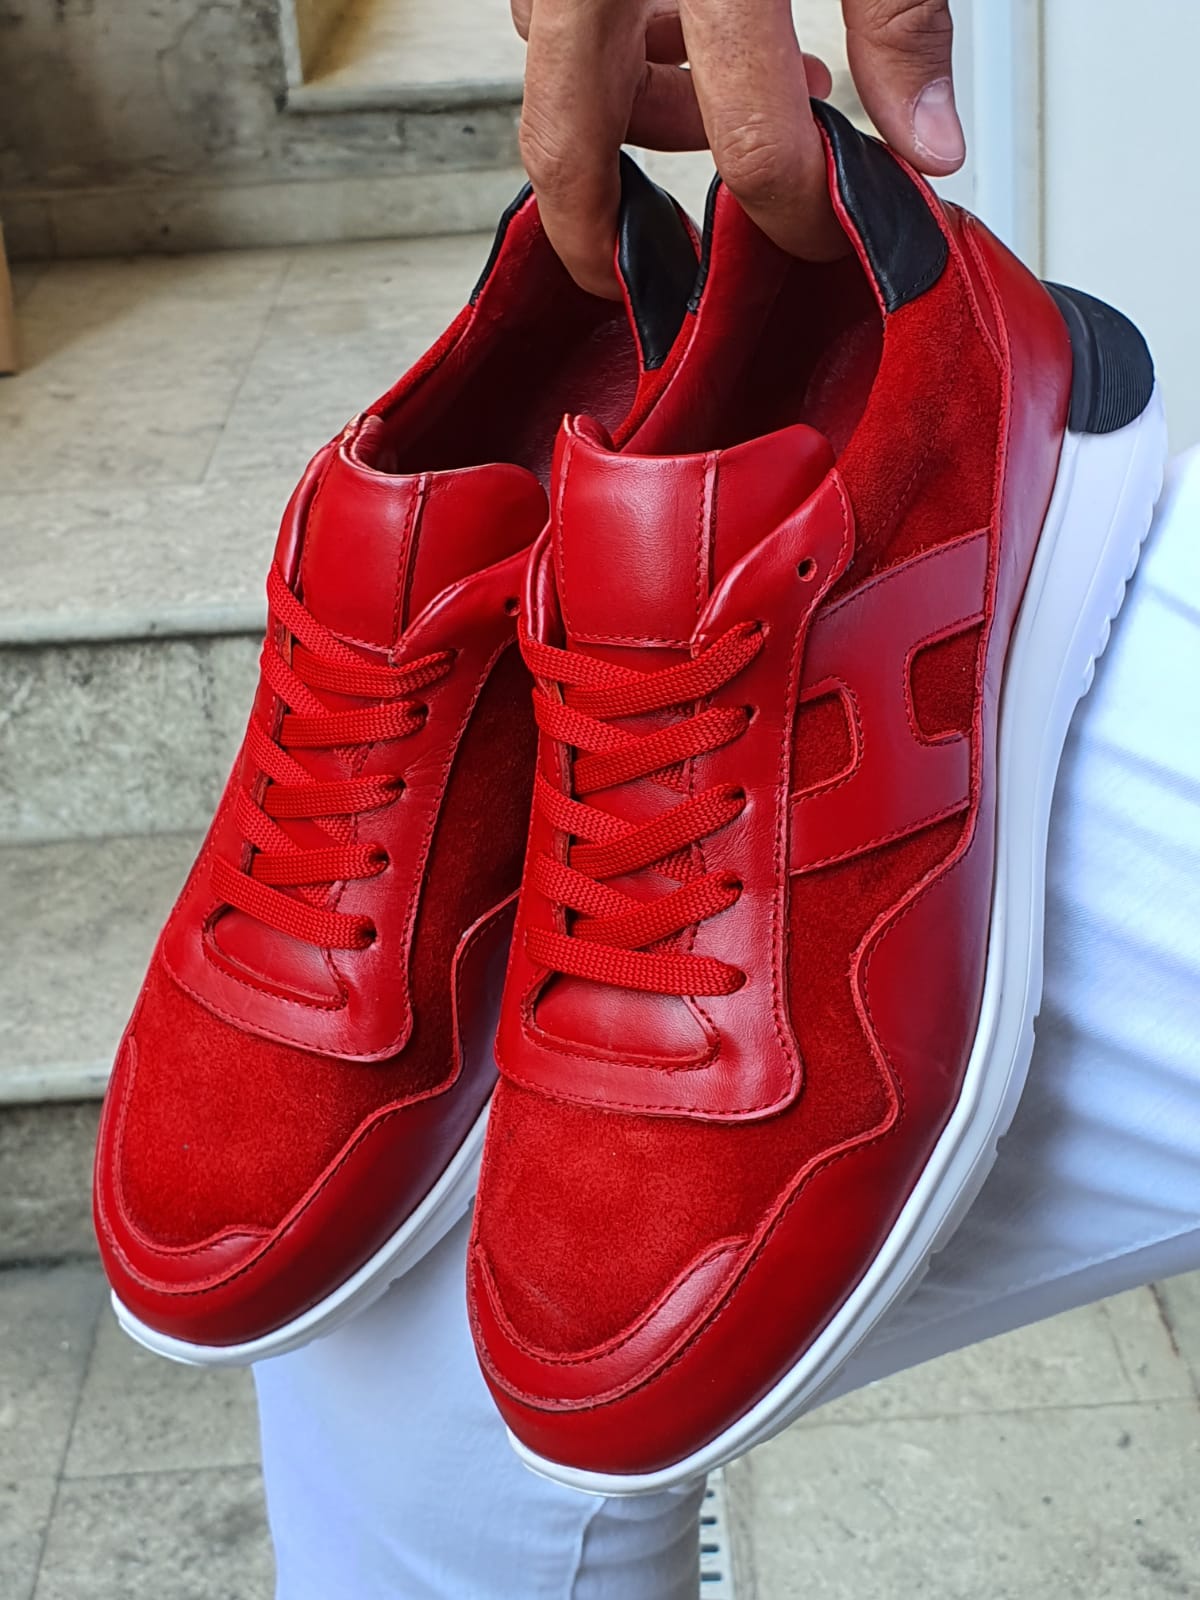 buy red sneakers